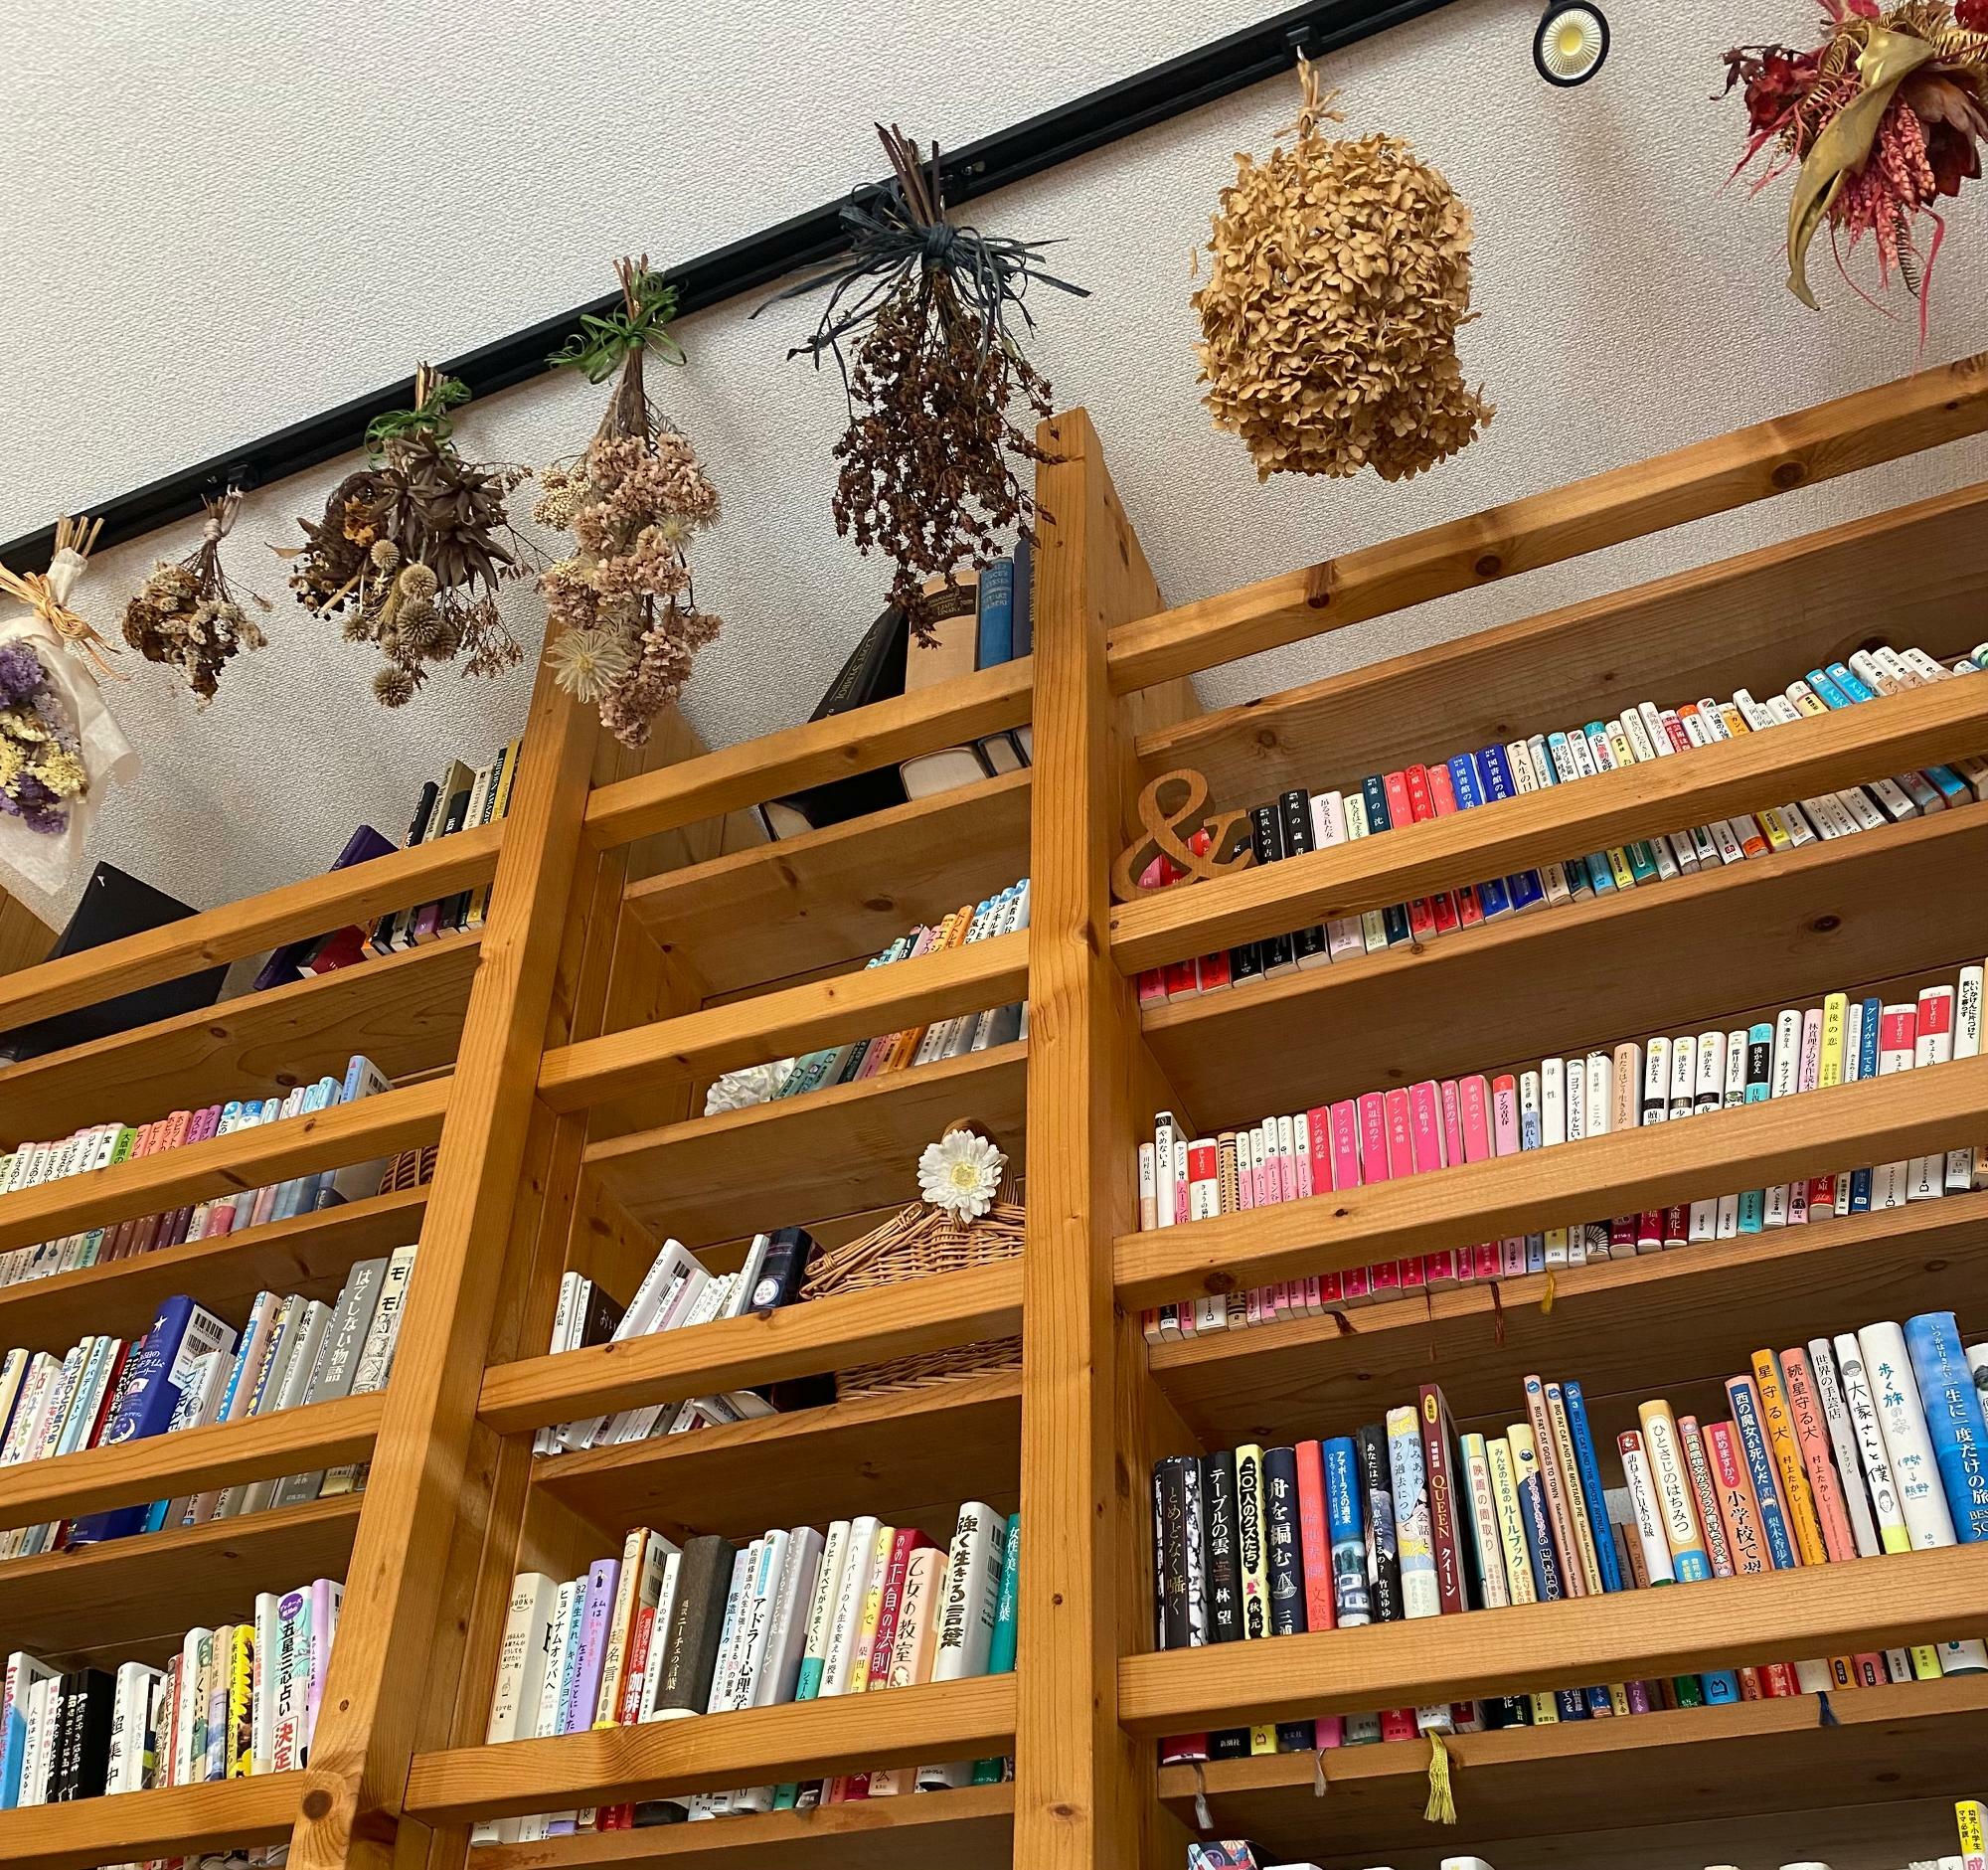 壁一面に取り付けられた本棚には、文庫本から雑誌、絵本までが並び自由に手に取って読むことができます。